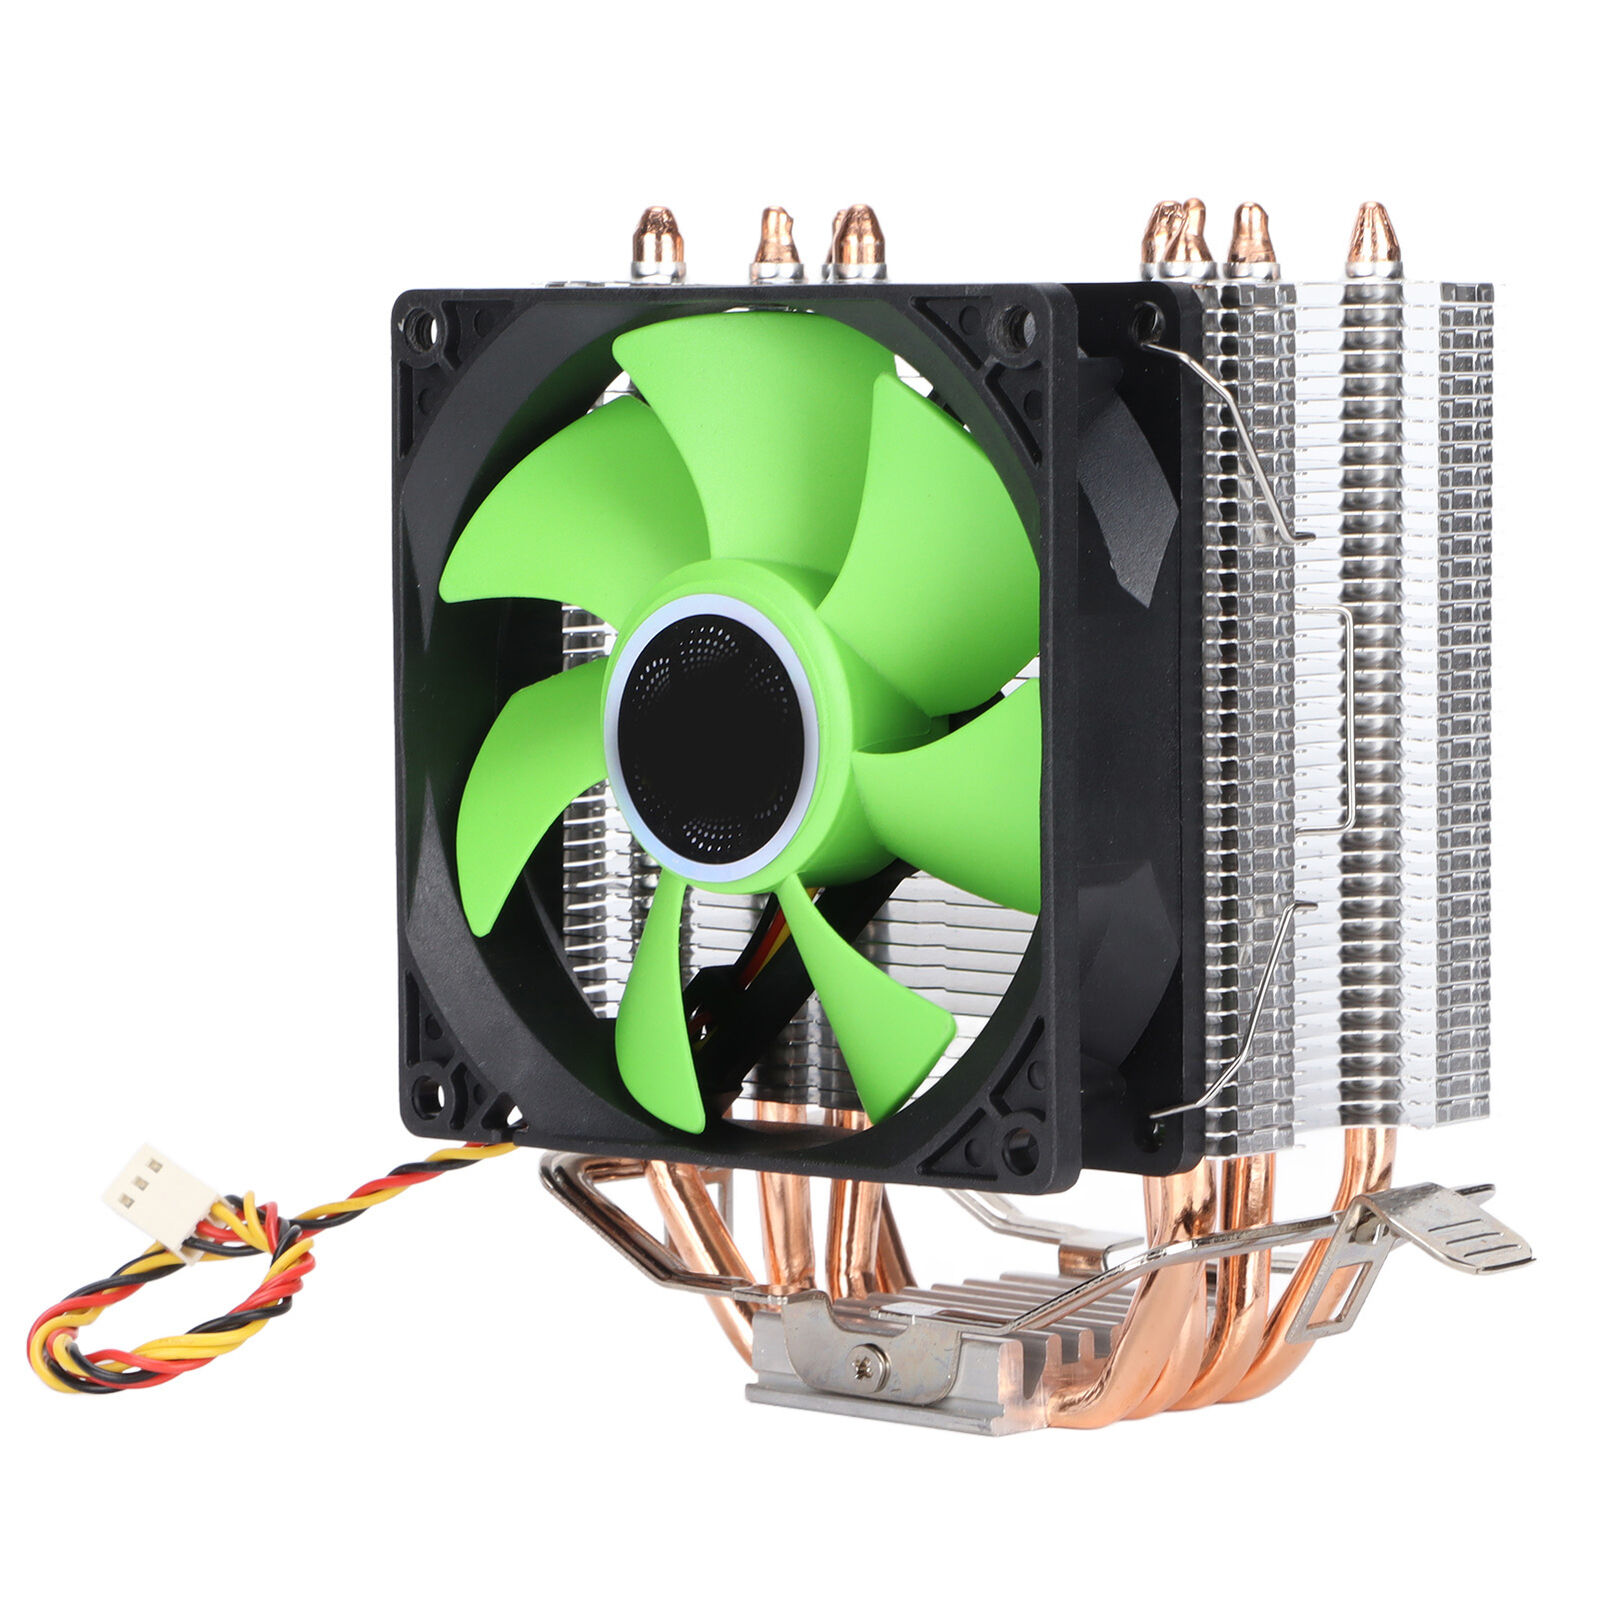 Cooling CPU Cooler Fan For LGA 775 1155 1156 1366 2011 Single/Dual Fan